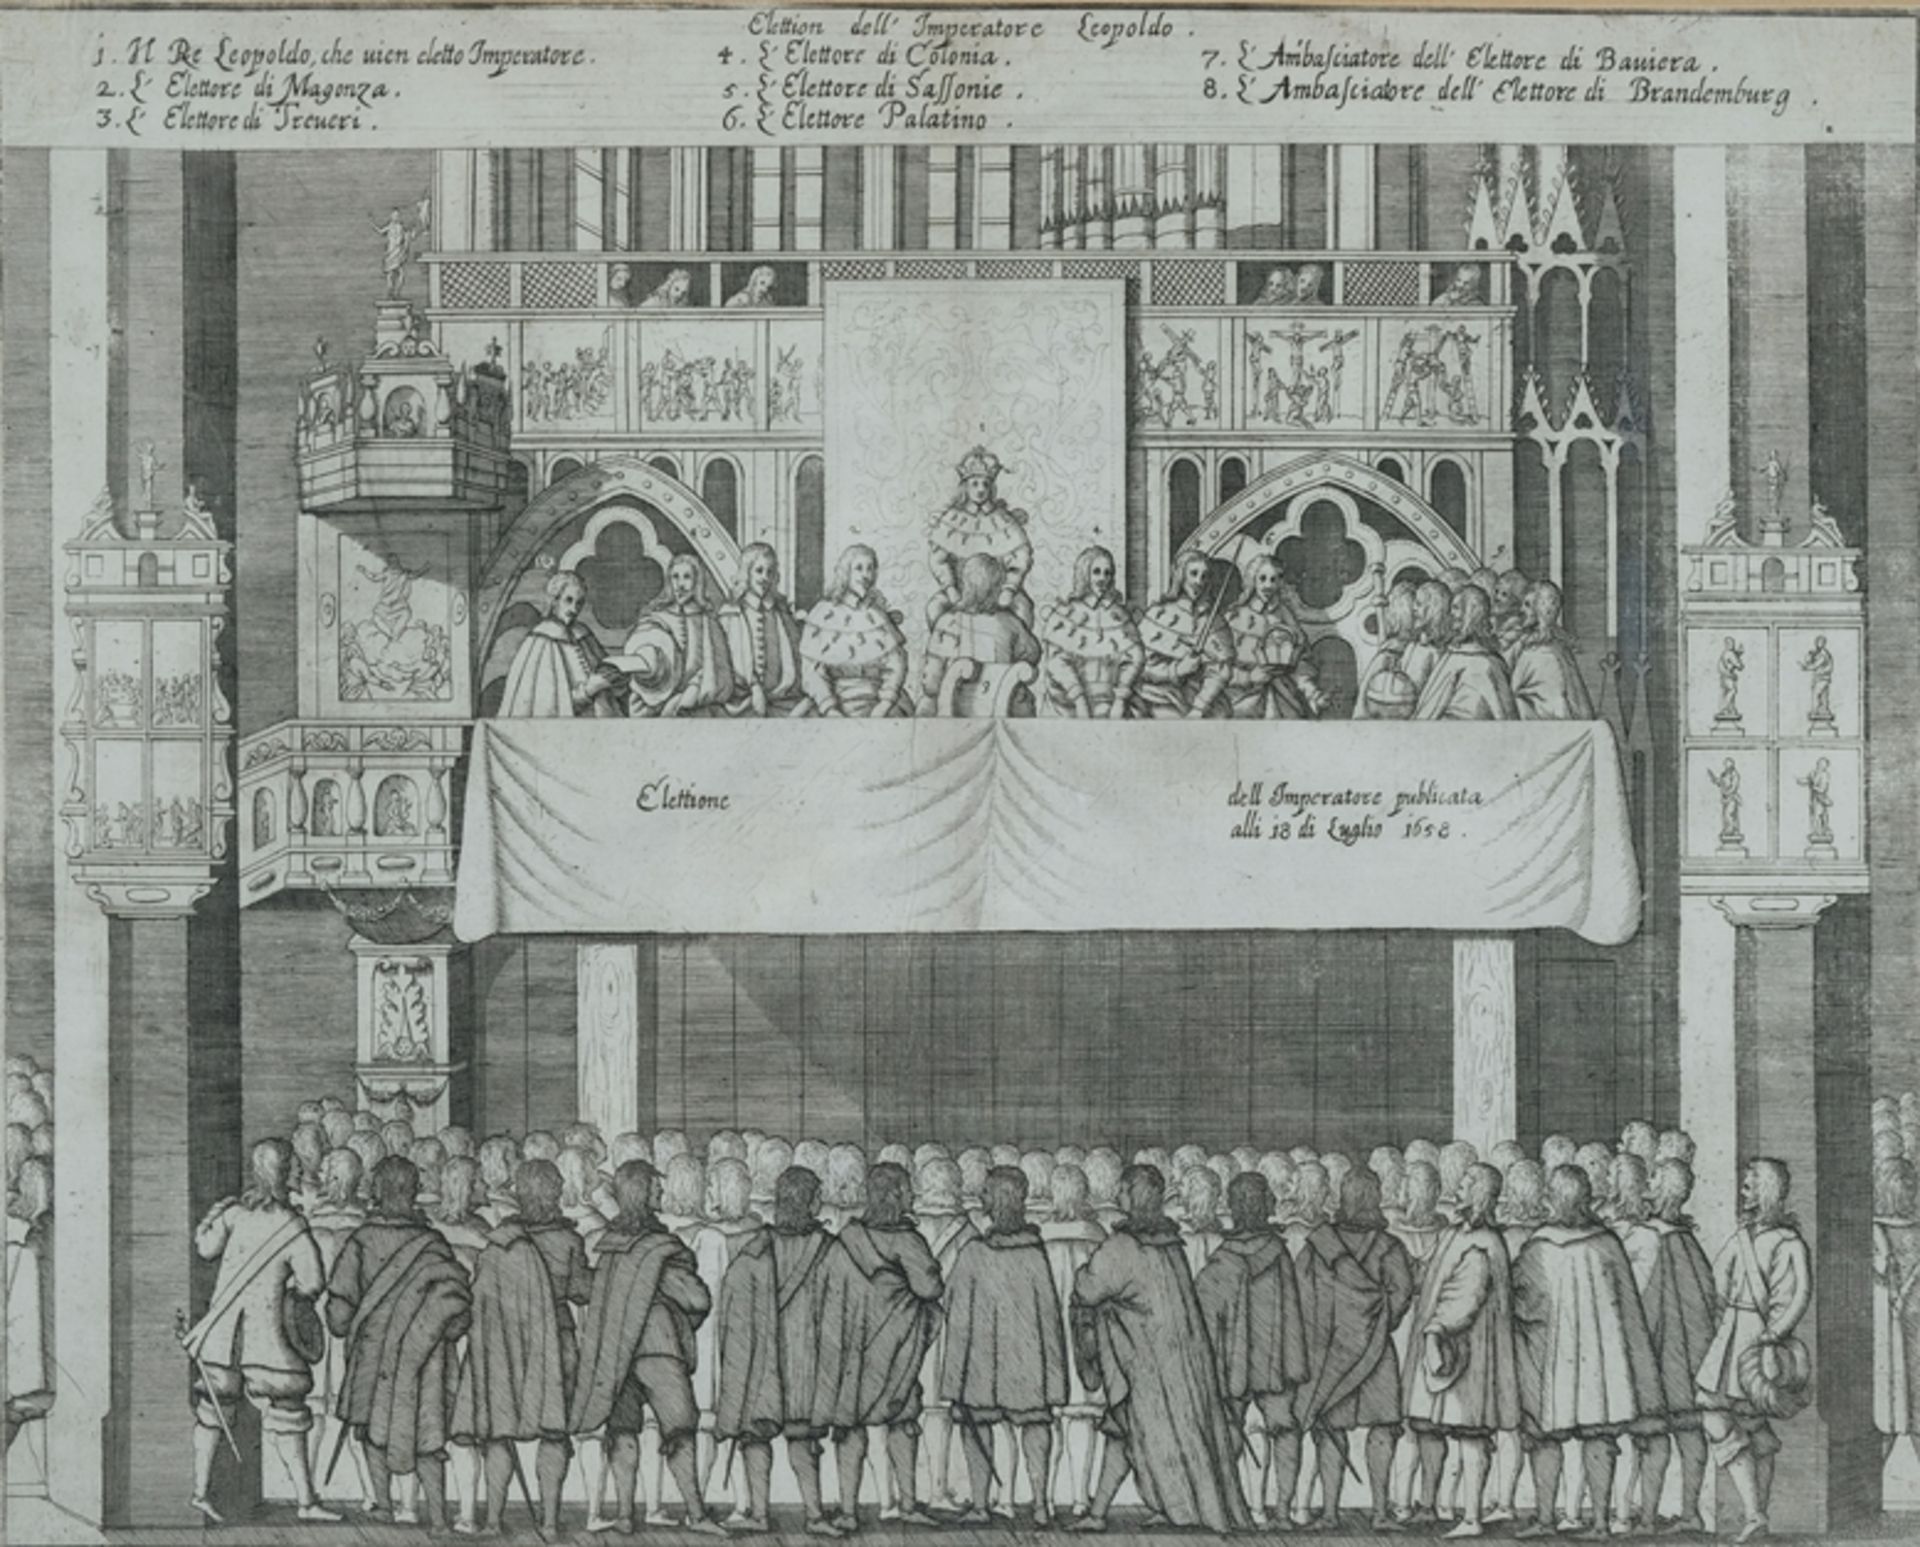 "Wahl von Leopold zum Kaiser des Heiligen Römischen Reiches am 18 Juli 1658", "dell imperatore publ